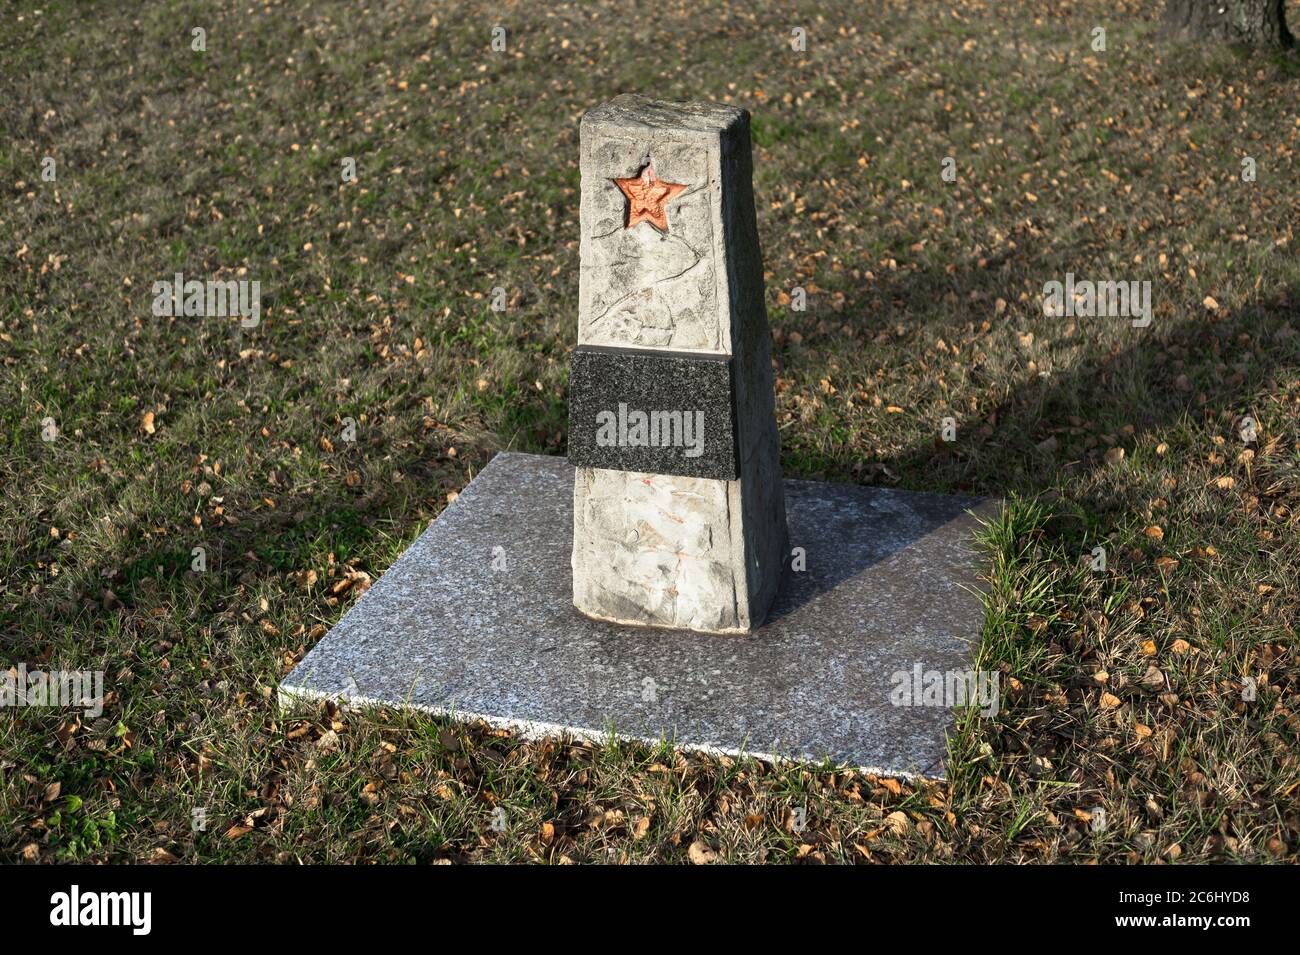 Monumento conmemorativo y tumba de soldado soviético desconocido del ejército rojo. Una lápida con una estrella roja. Hierba y hojas alrededor del lugar Foto de stock